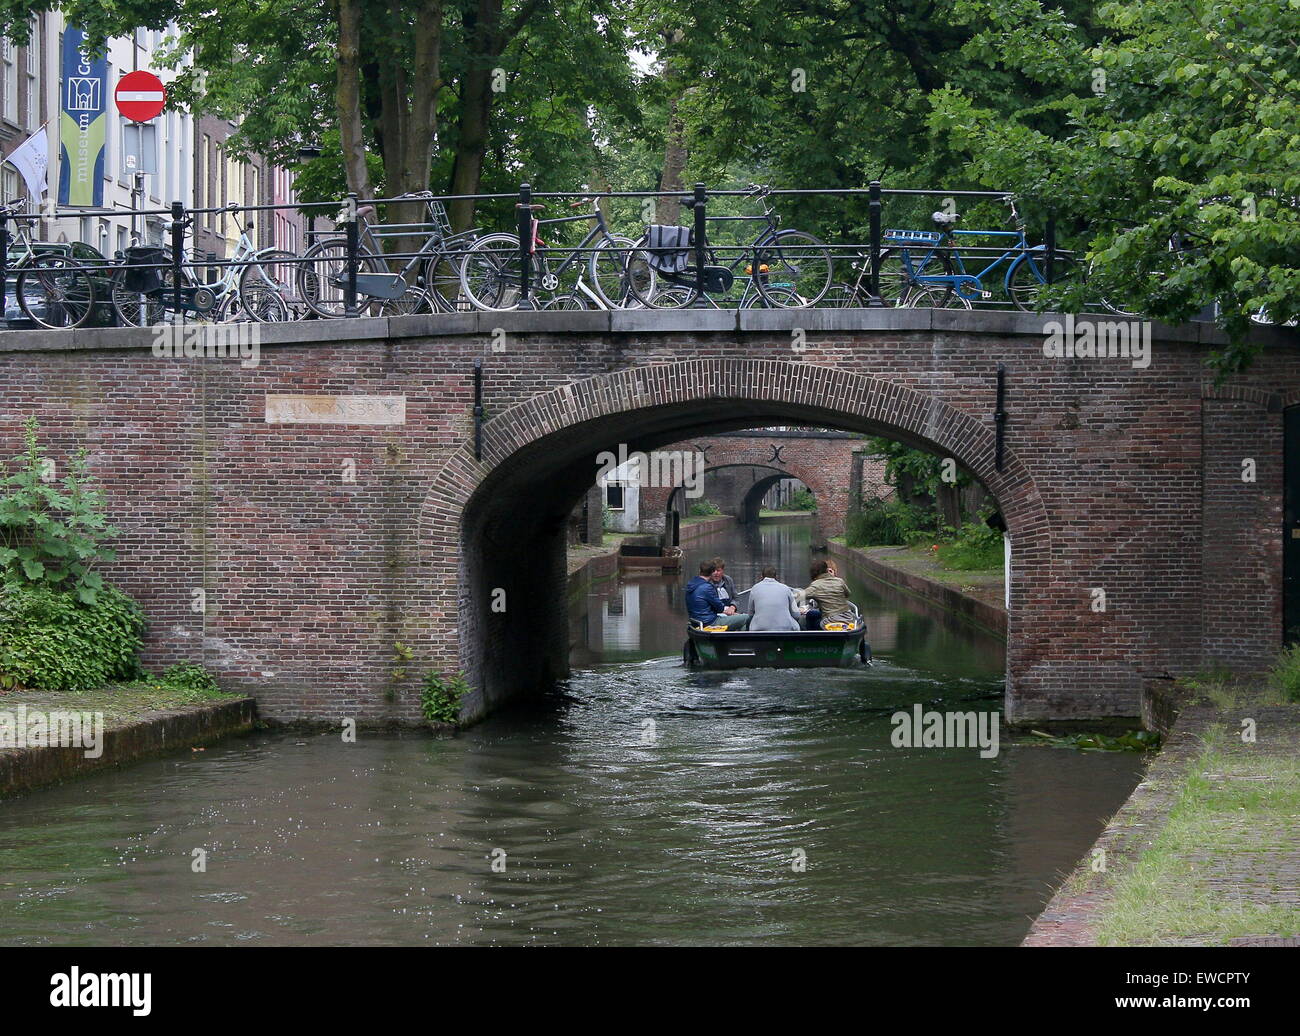 Personen auf einem Schiff unter einer Brücke am Nieuwegracht Kanal in der mittelalterlichen Innenstadt von Utrecht, Niederlande Stockfoto